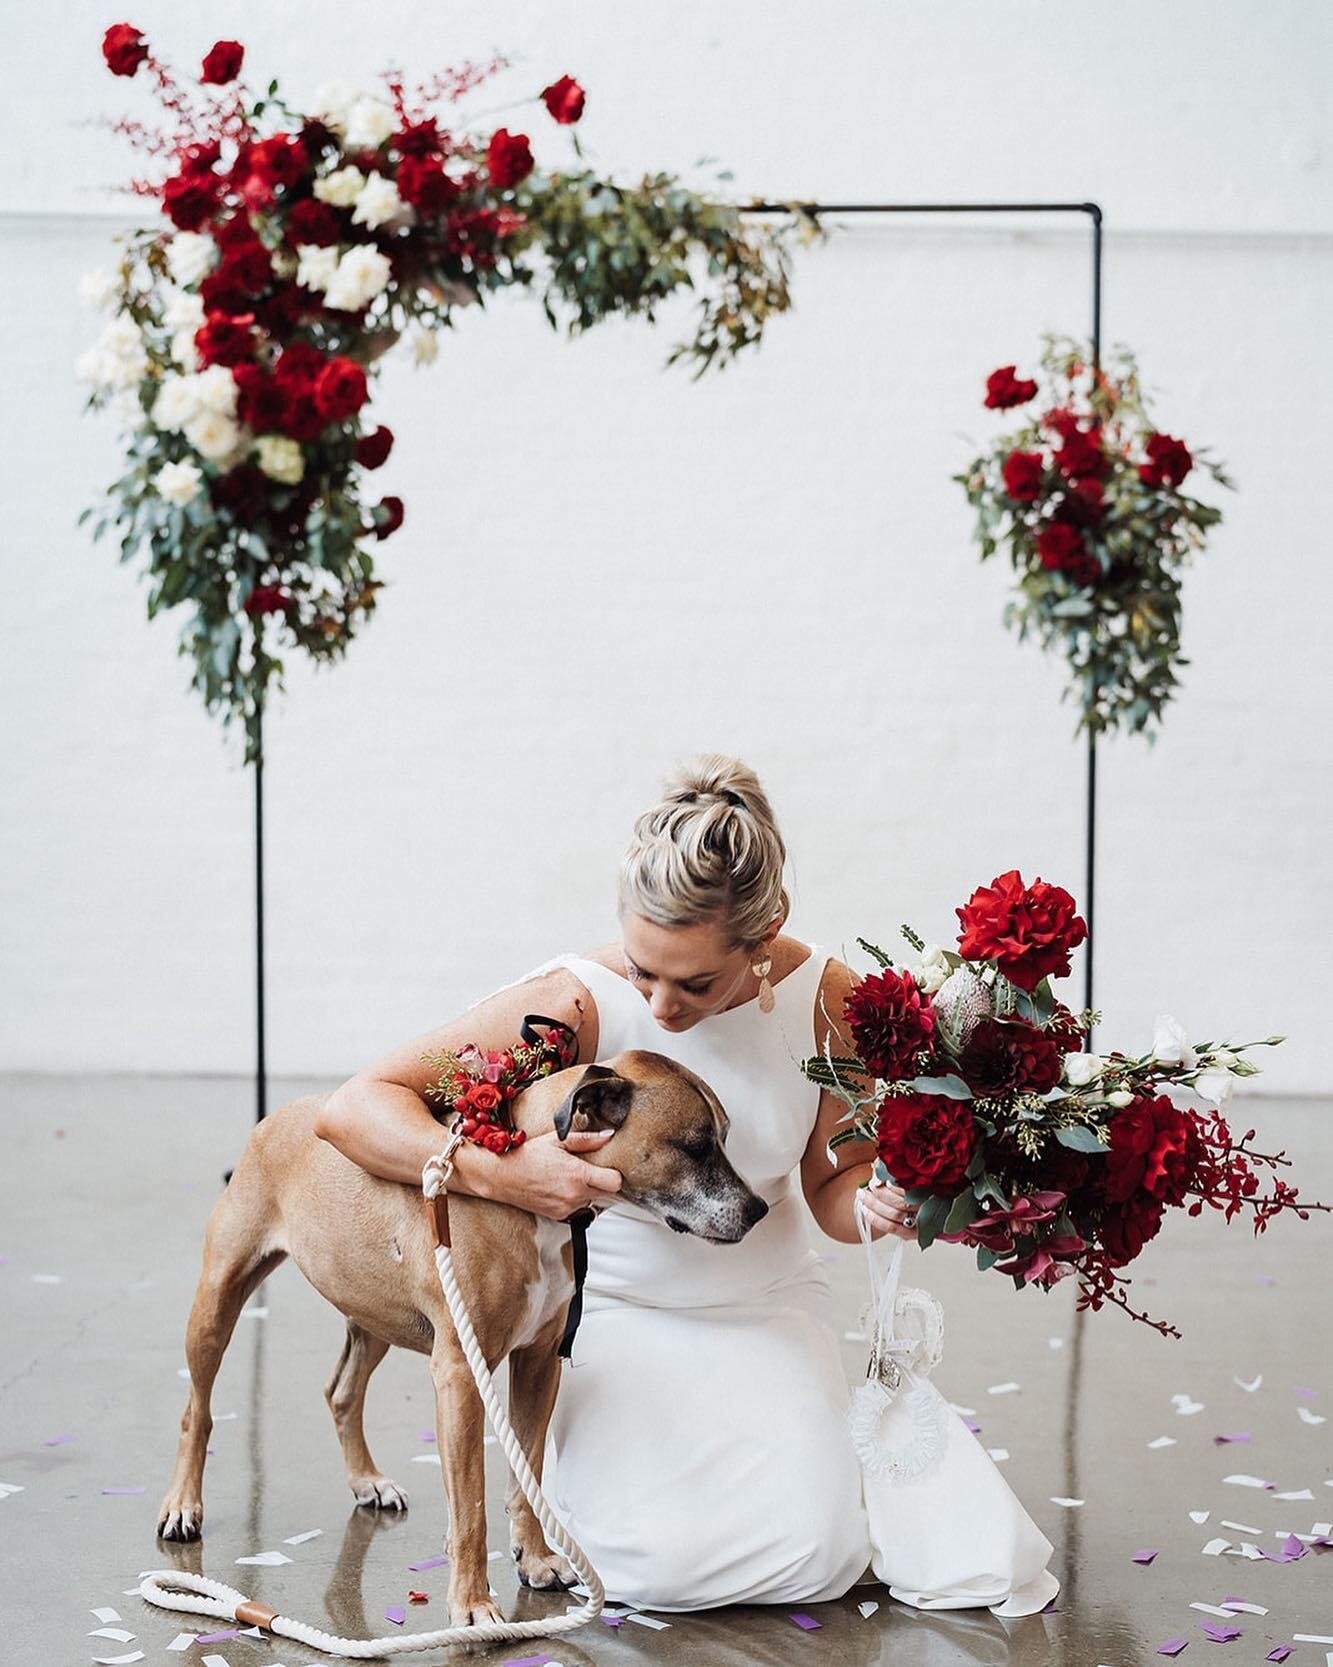 Best. Bride squad. Ever

💐@anatomyofflowers
📸 @nickskinnerweddings

#dogsofinstagram #bridesmaids #bridalparty #bridesquad #maidofhonor #bestman #ceremony #celebrant #wedding #party #galsbestfriend